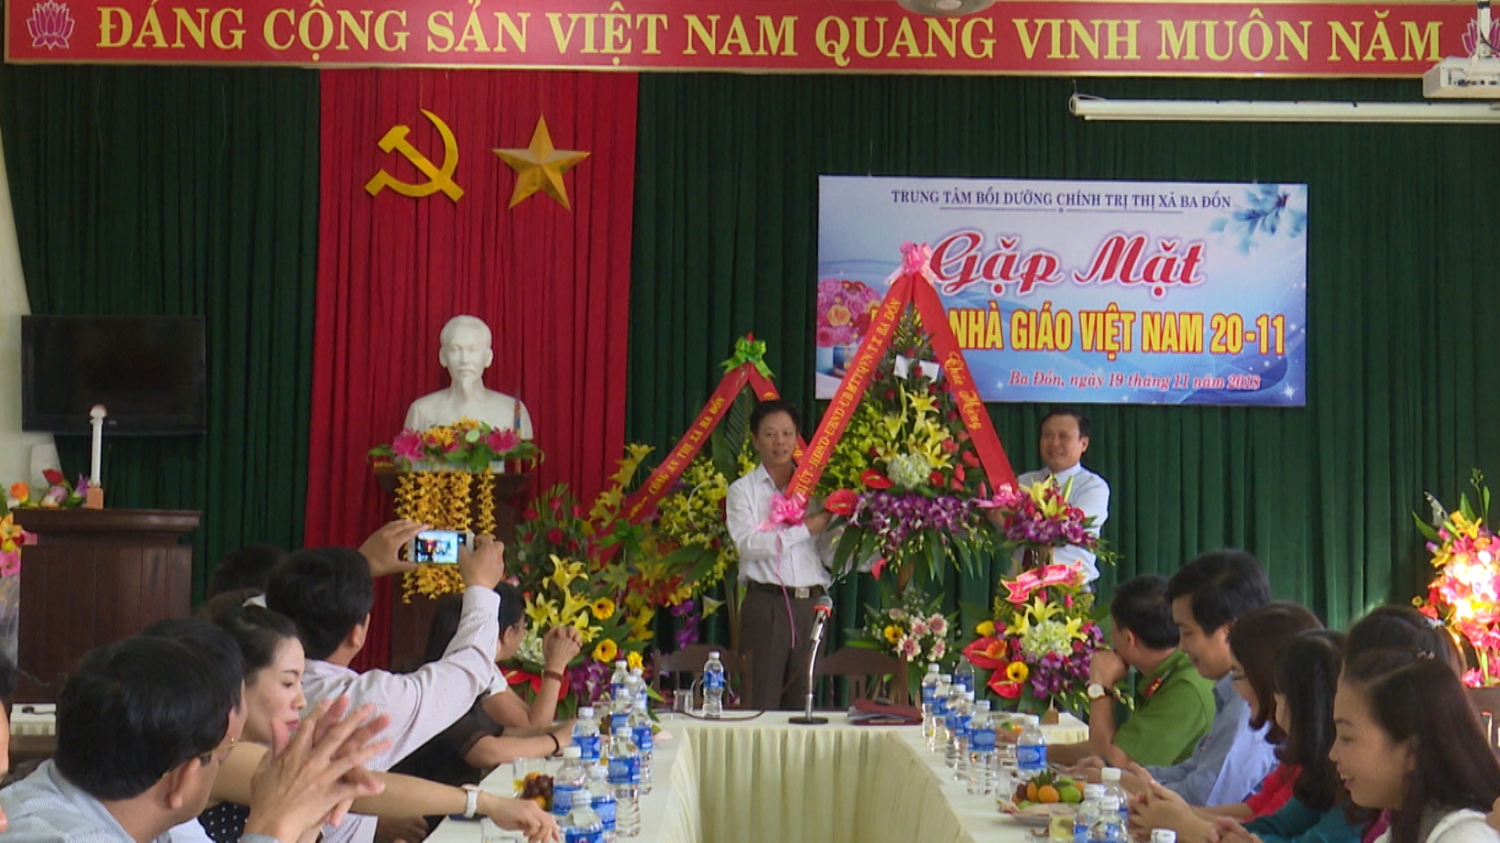 Trung Tâm Bồi dưỡng Chính trị thị xã Ba Đồn gặp mặt kỷ niệm 36 năm ngày Nhà giáo Việt Nam 20-11